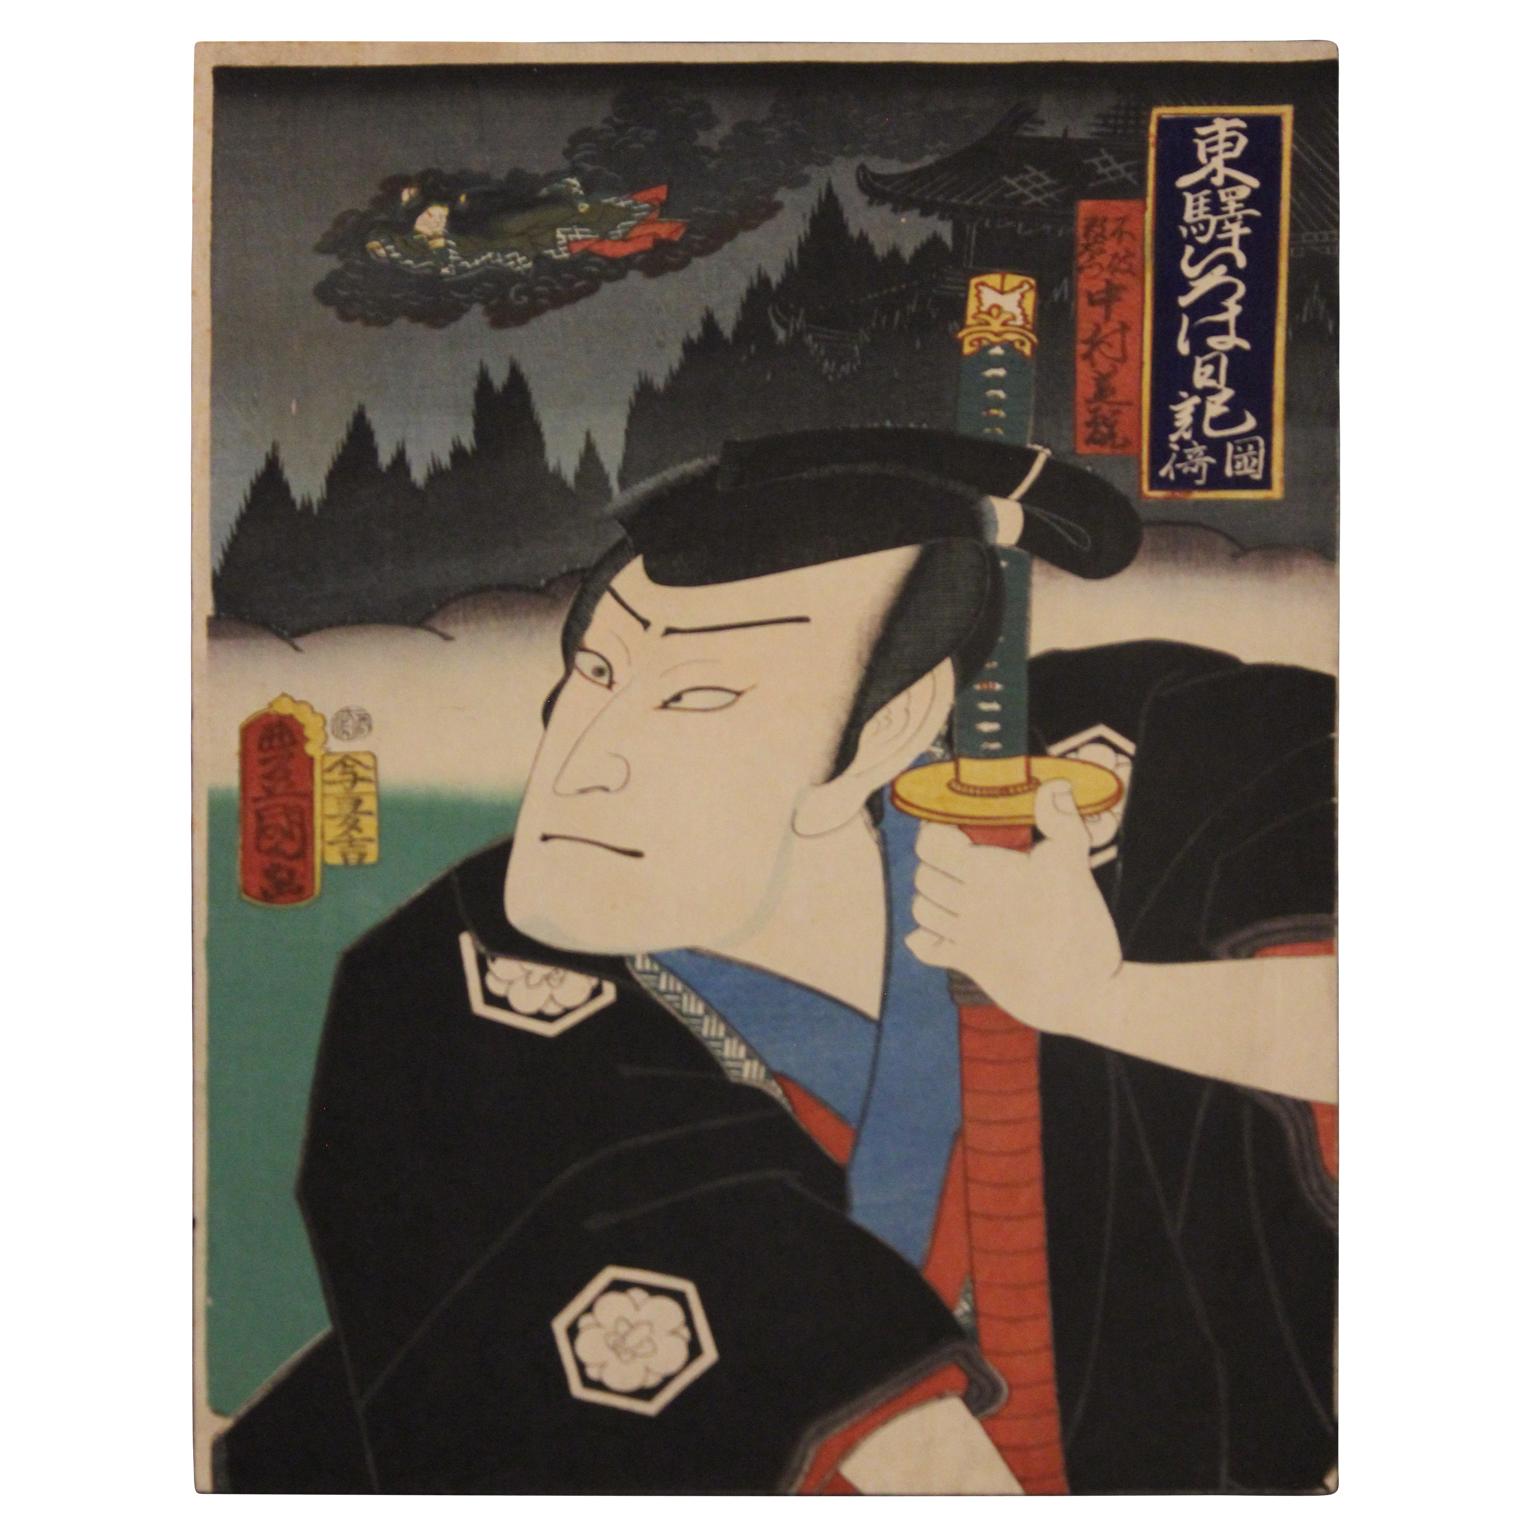 Utagawa Kunisada (Toyokuni III) Portrait Print - Nakamura Shikan IV in the Role of Fuwa Kazuemon Japanese Woodblock Print